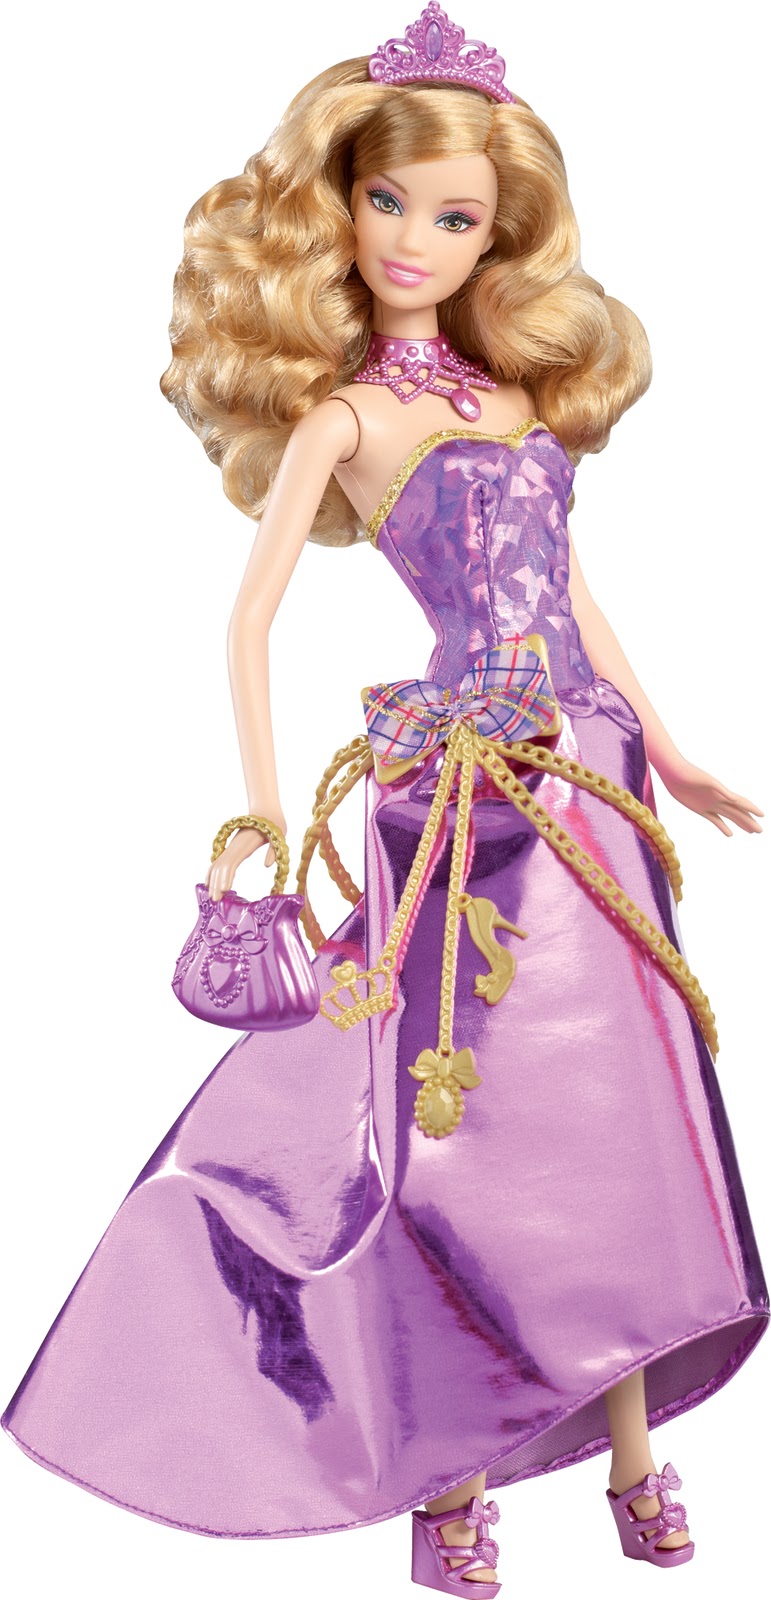 Dejuguetes: Barbie Escuela de princesas y Amigas fiesta Escuela de princesas